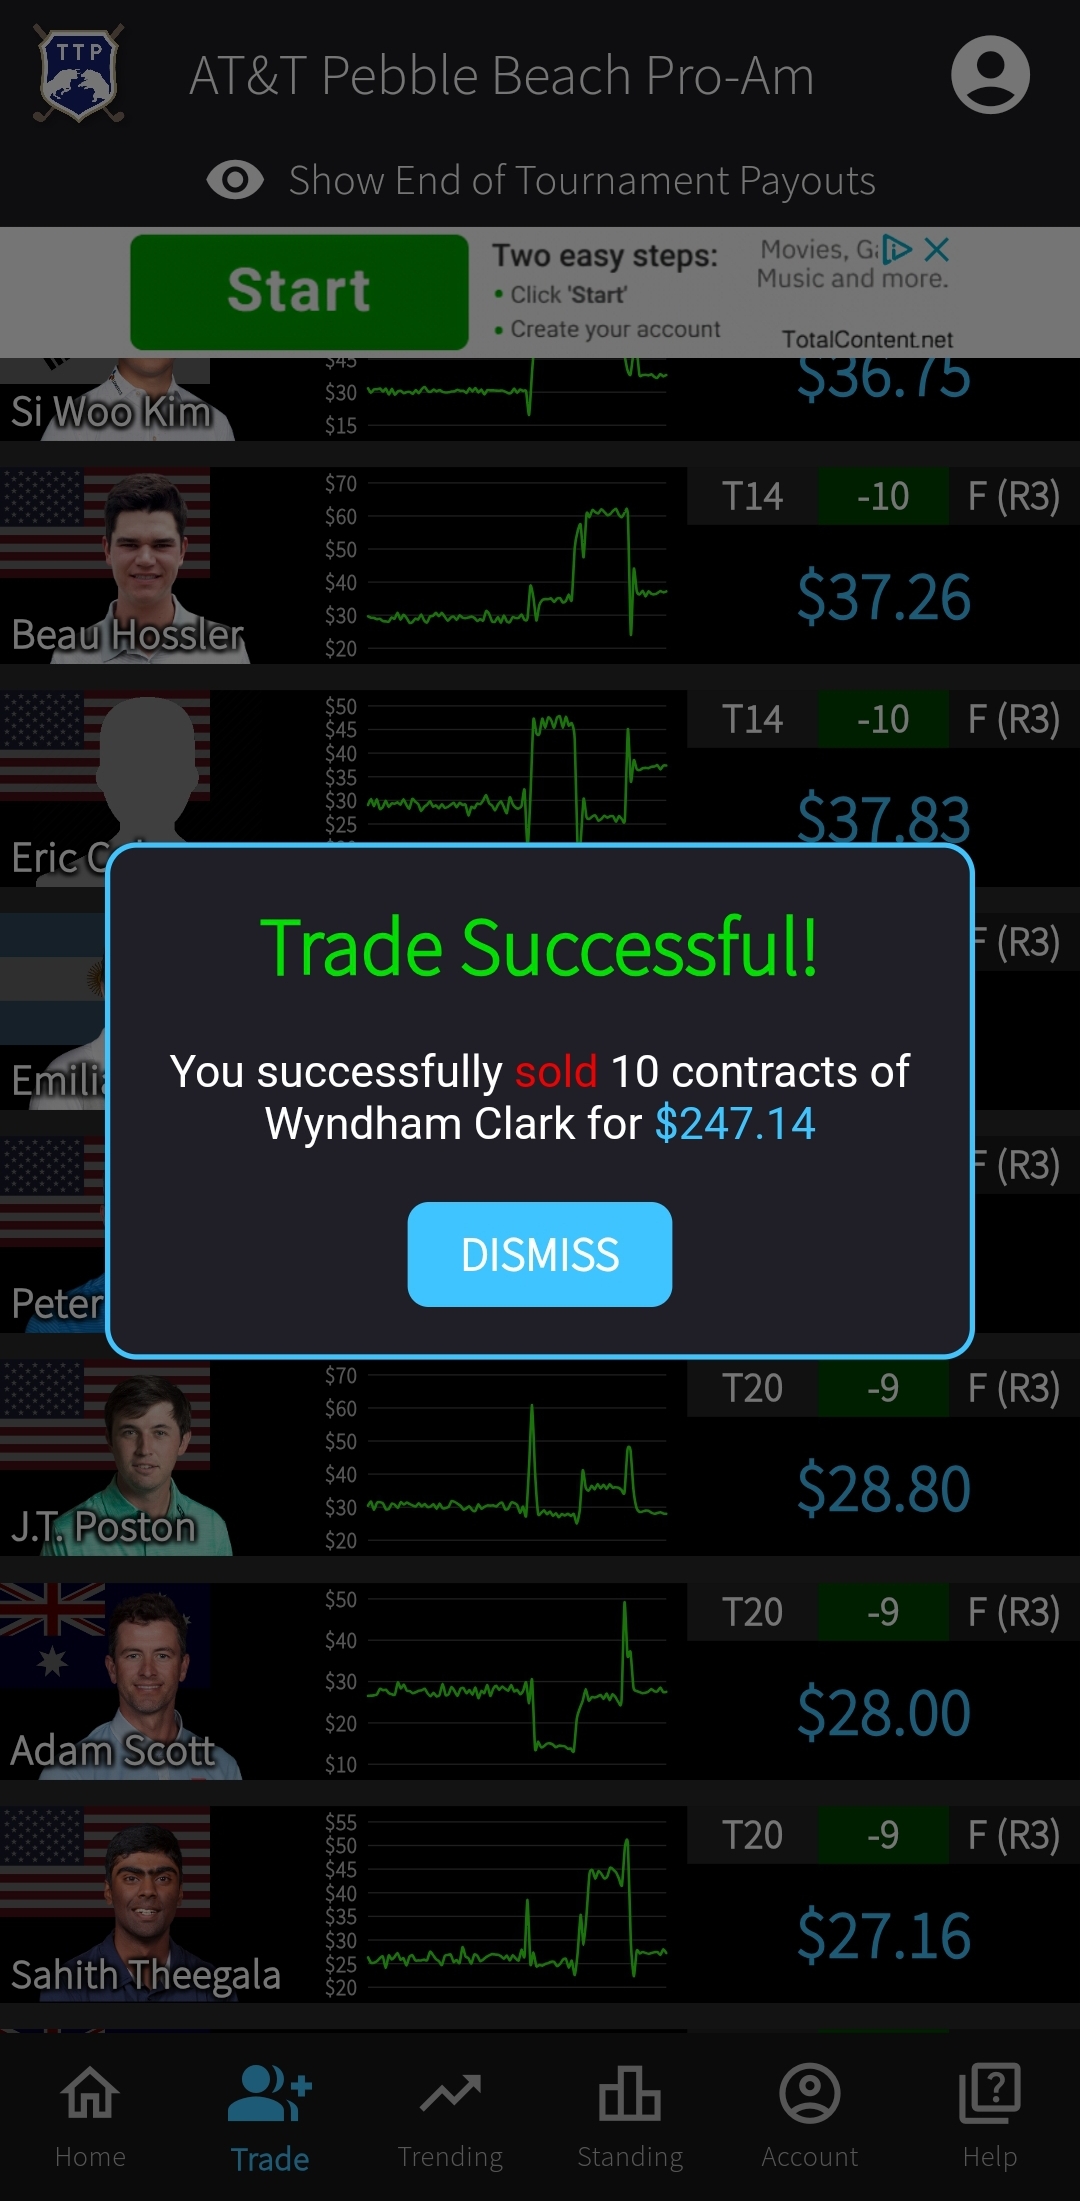 Trade Successful